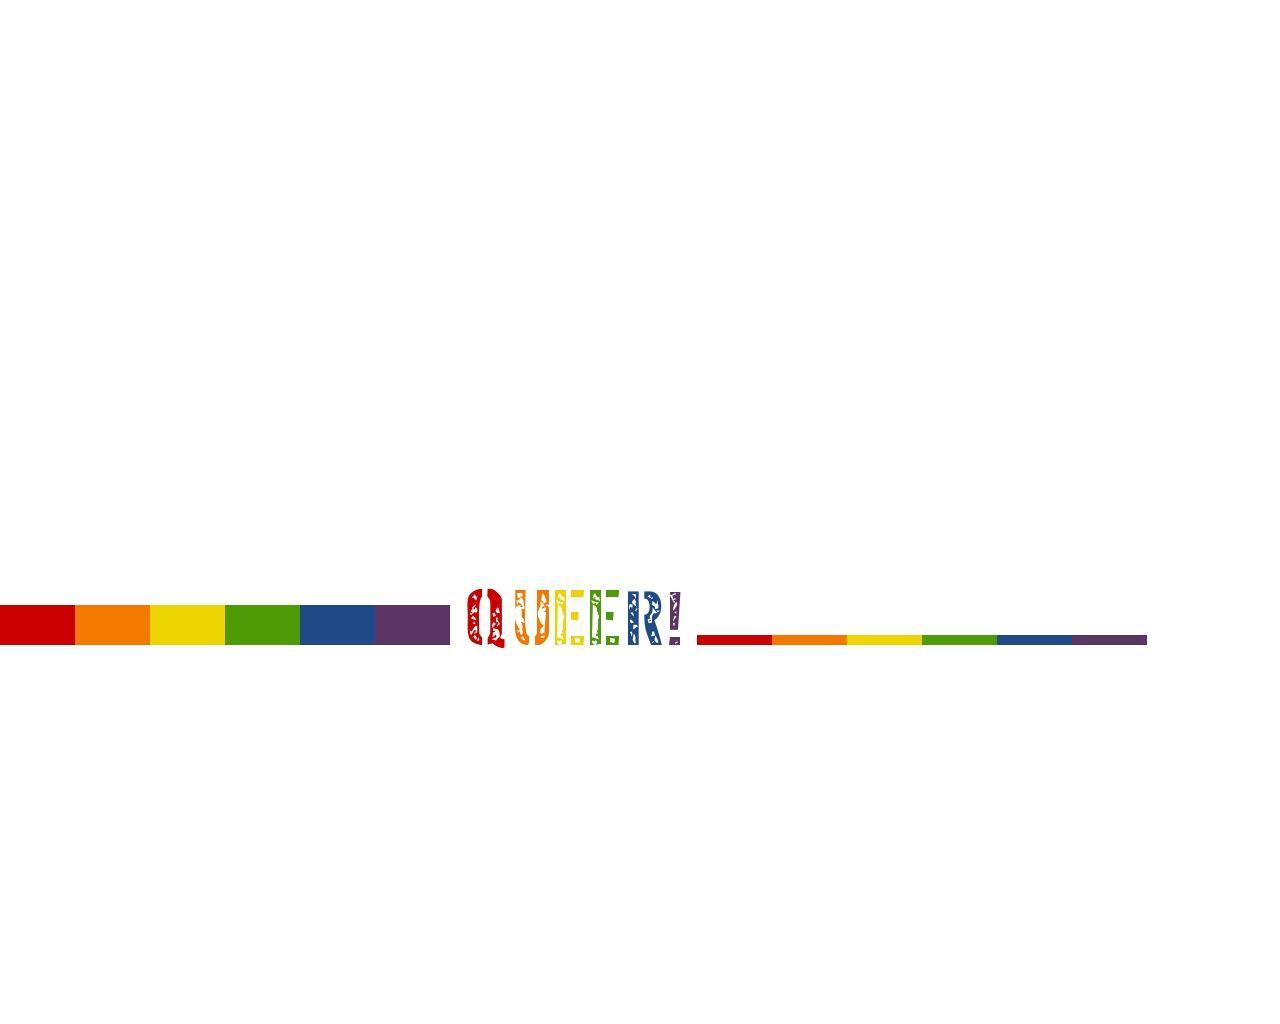 Queer Background. Queer Wallpaper, Queer